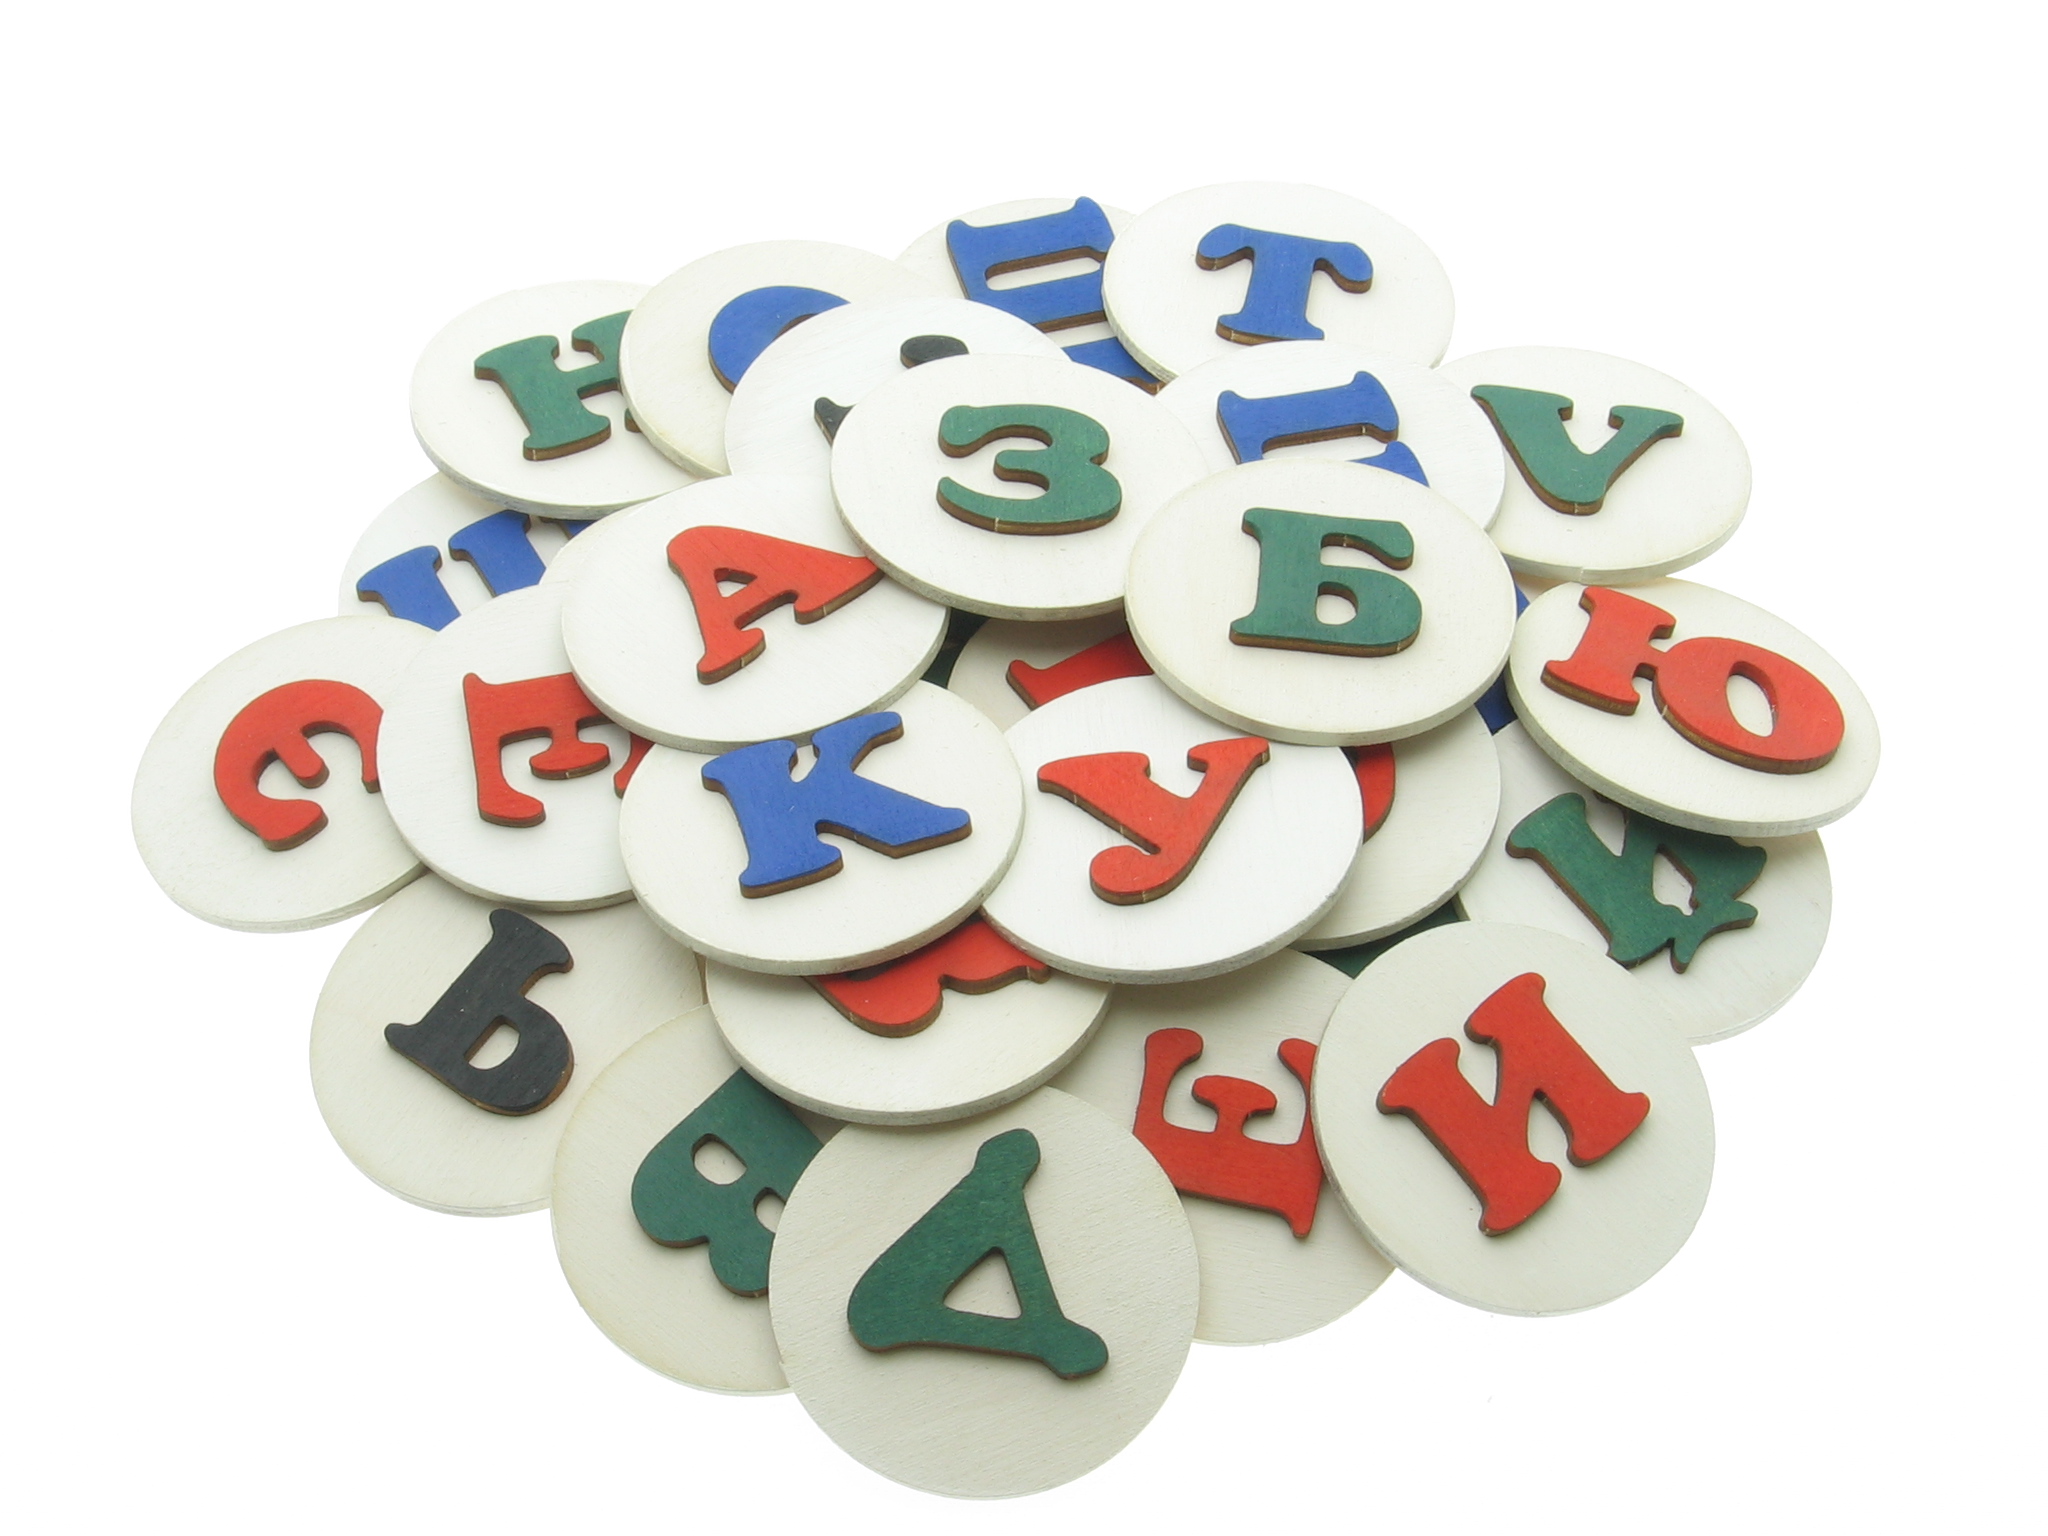 Методический материал для обучения детей русской азбуке. Сделай деревянную азбуку на магнитах своими руками с детьми.